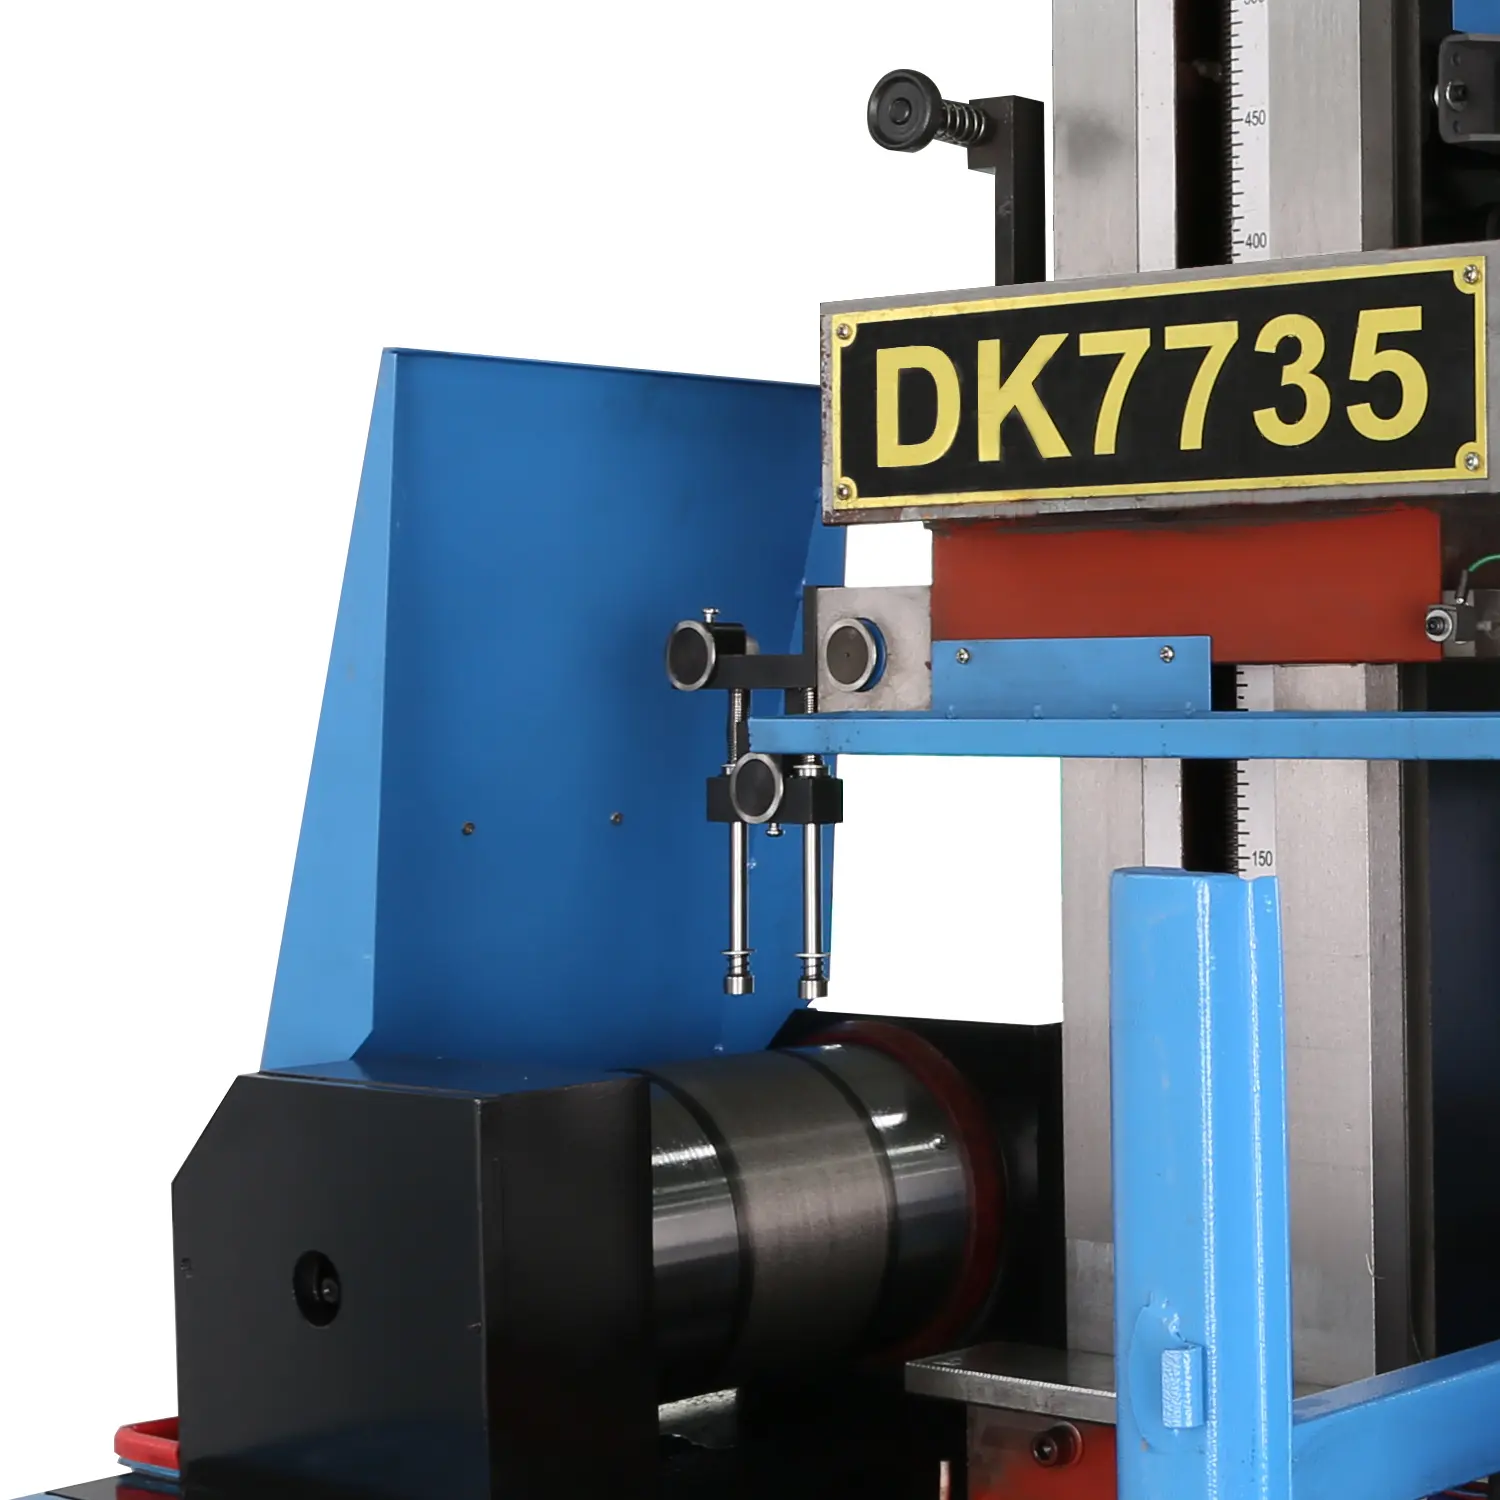 DK7735 higher quality Hot Product CNC Wire Machine edm cnc wire cutting machine